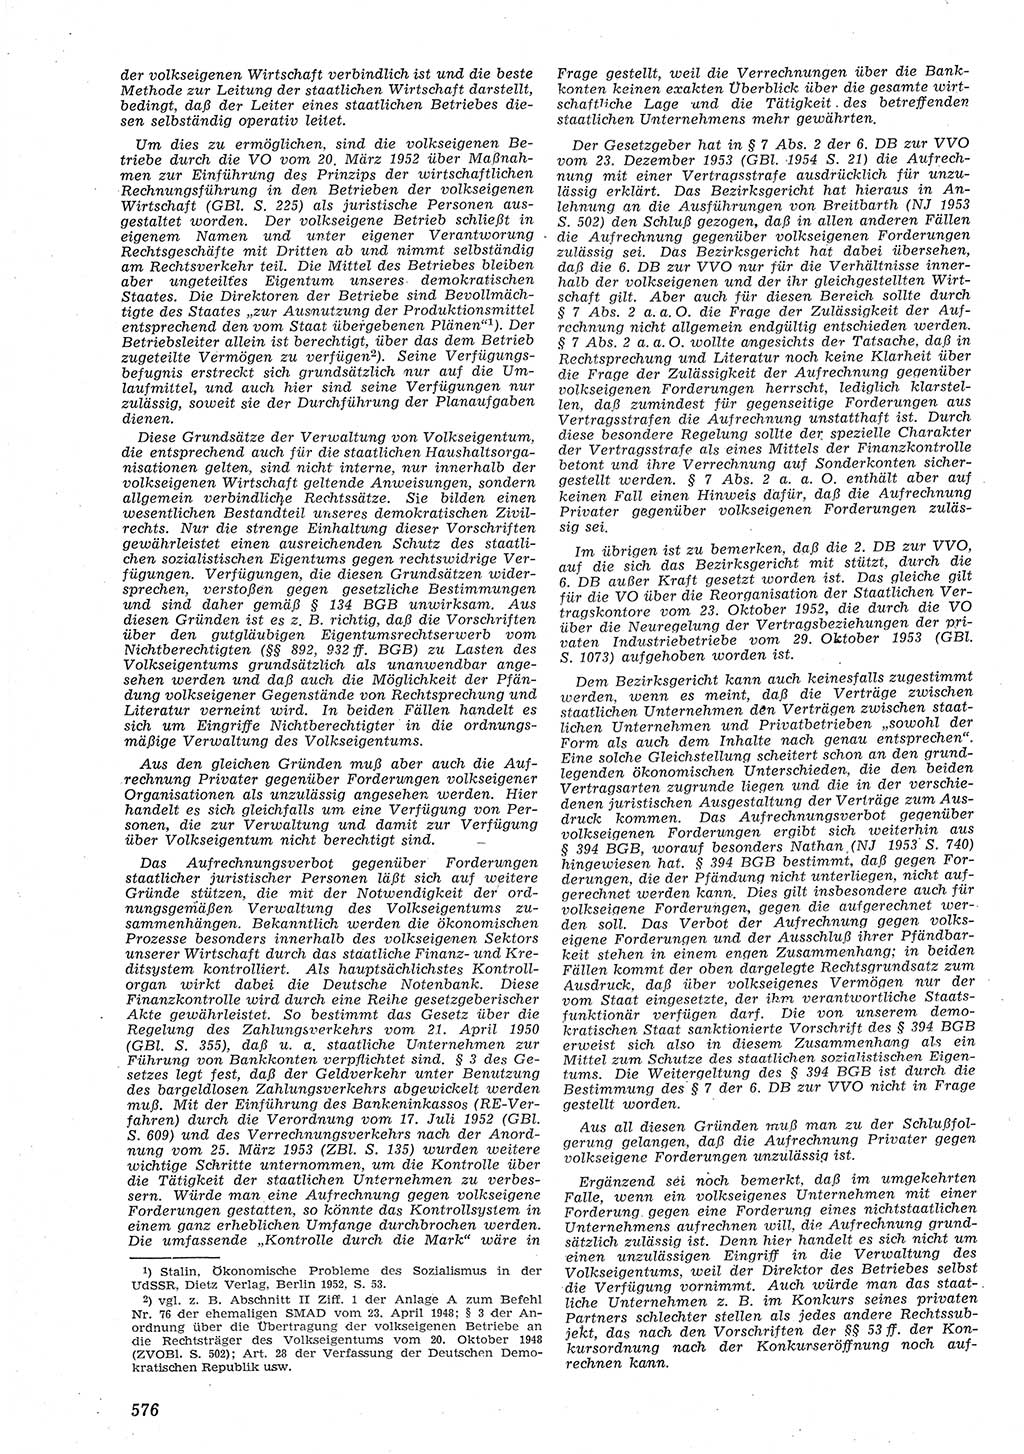 Neue Justiz (NJ), Zeitschrift für Recht und Rechtswissenschaft [Deutsche Demokratische Republik (DDR)], 8. Jahrgang 1954, Seite 576 (NJ DDR 1954, S. 576)